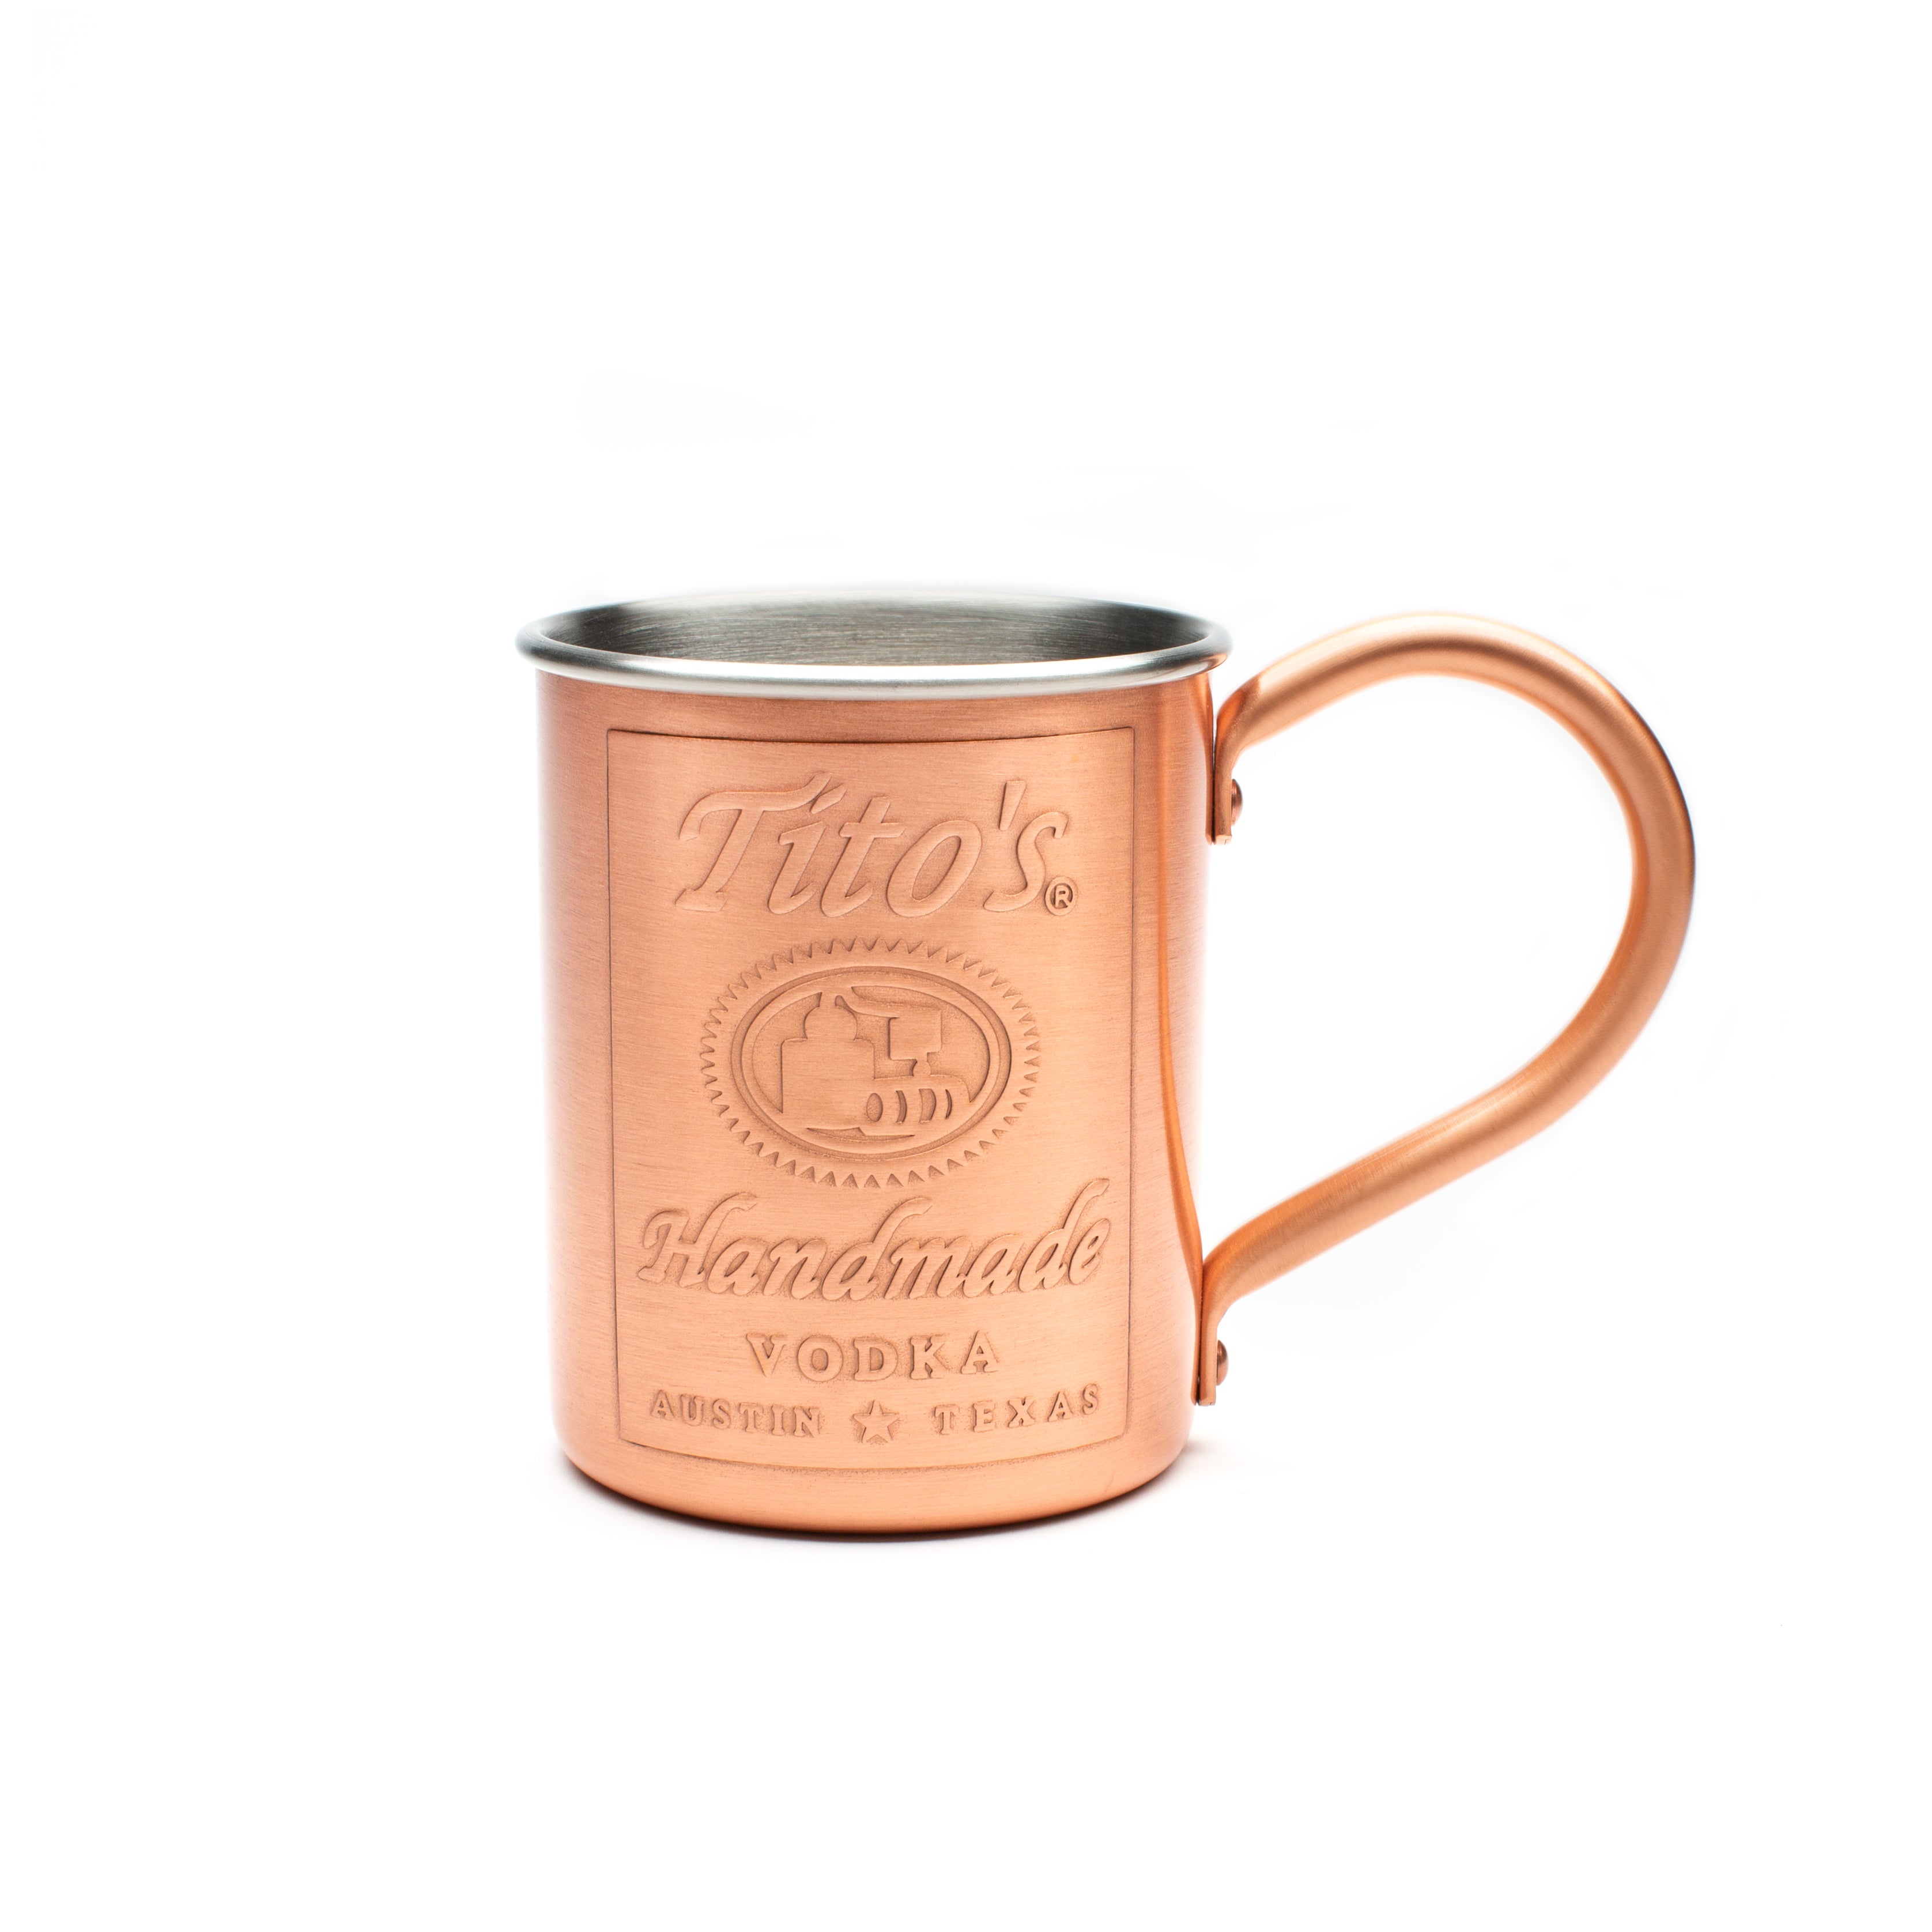 http://store.titosvodka.com/cdn/shop/products/titos-copper-mug.jpg?v=1612462631